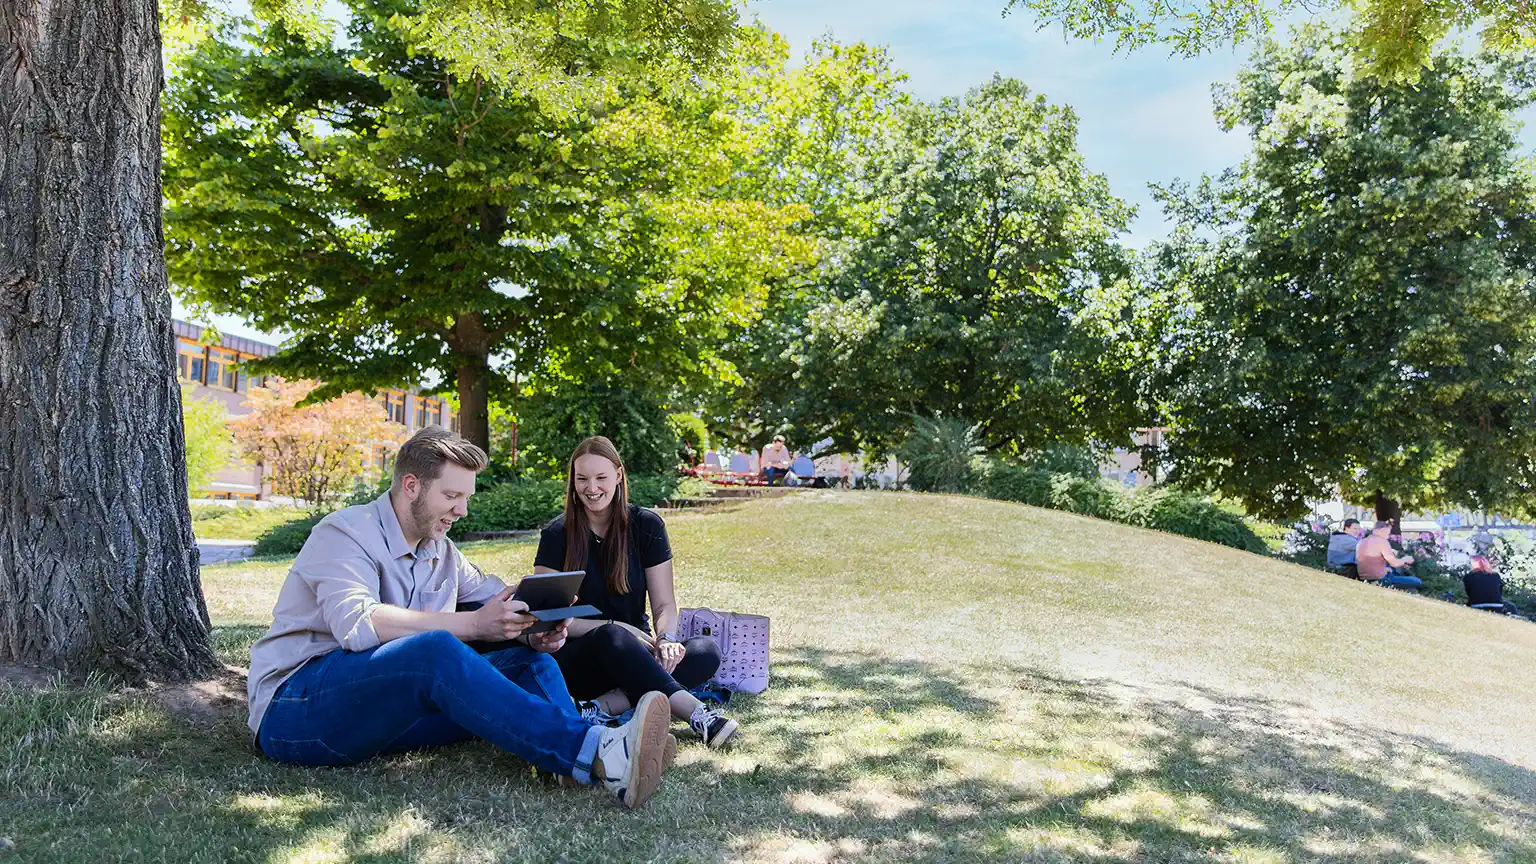 Ein Studierender und eine Studentin sitzen lachend auf einer Wiese. Er zeigt ihr etwas auf einem Tablet. Im Hintergrund sind Bäume zu erkennen.